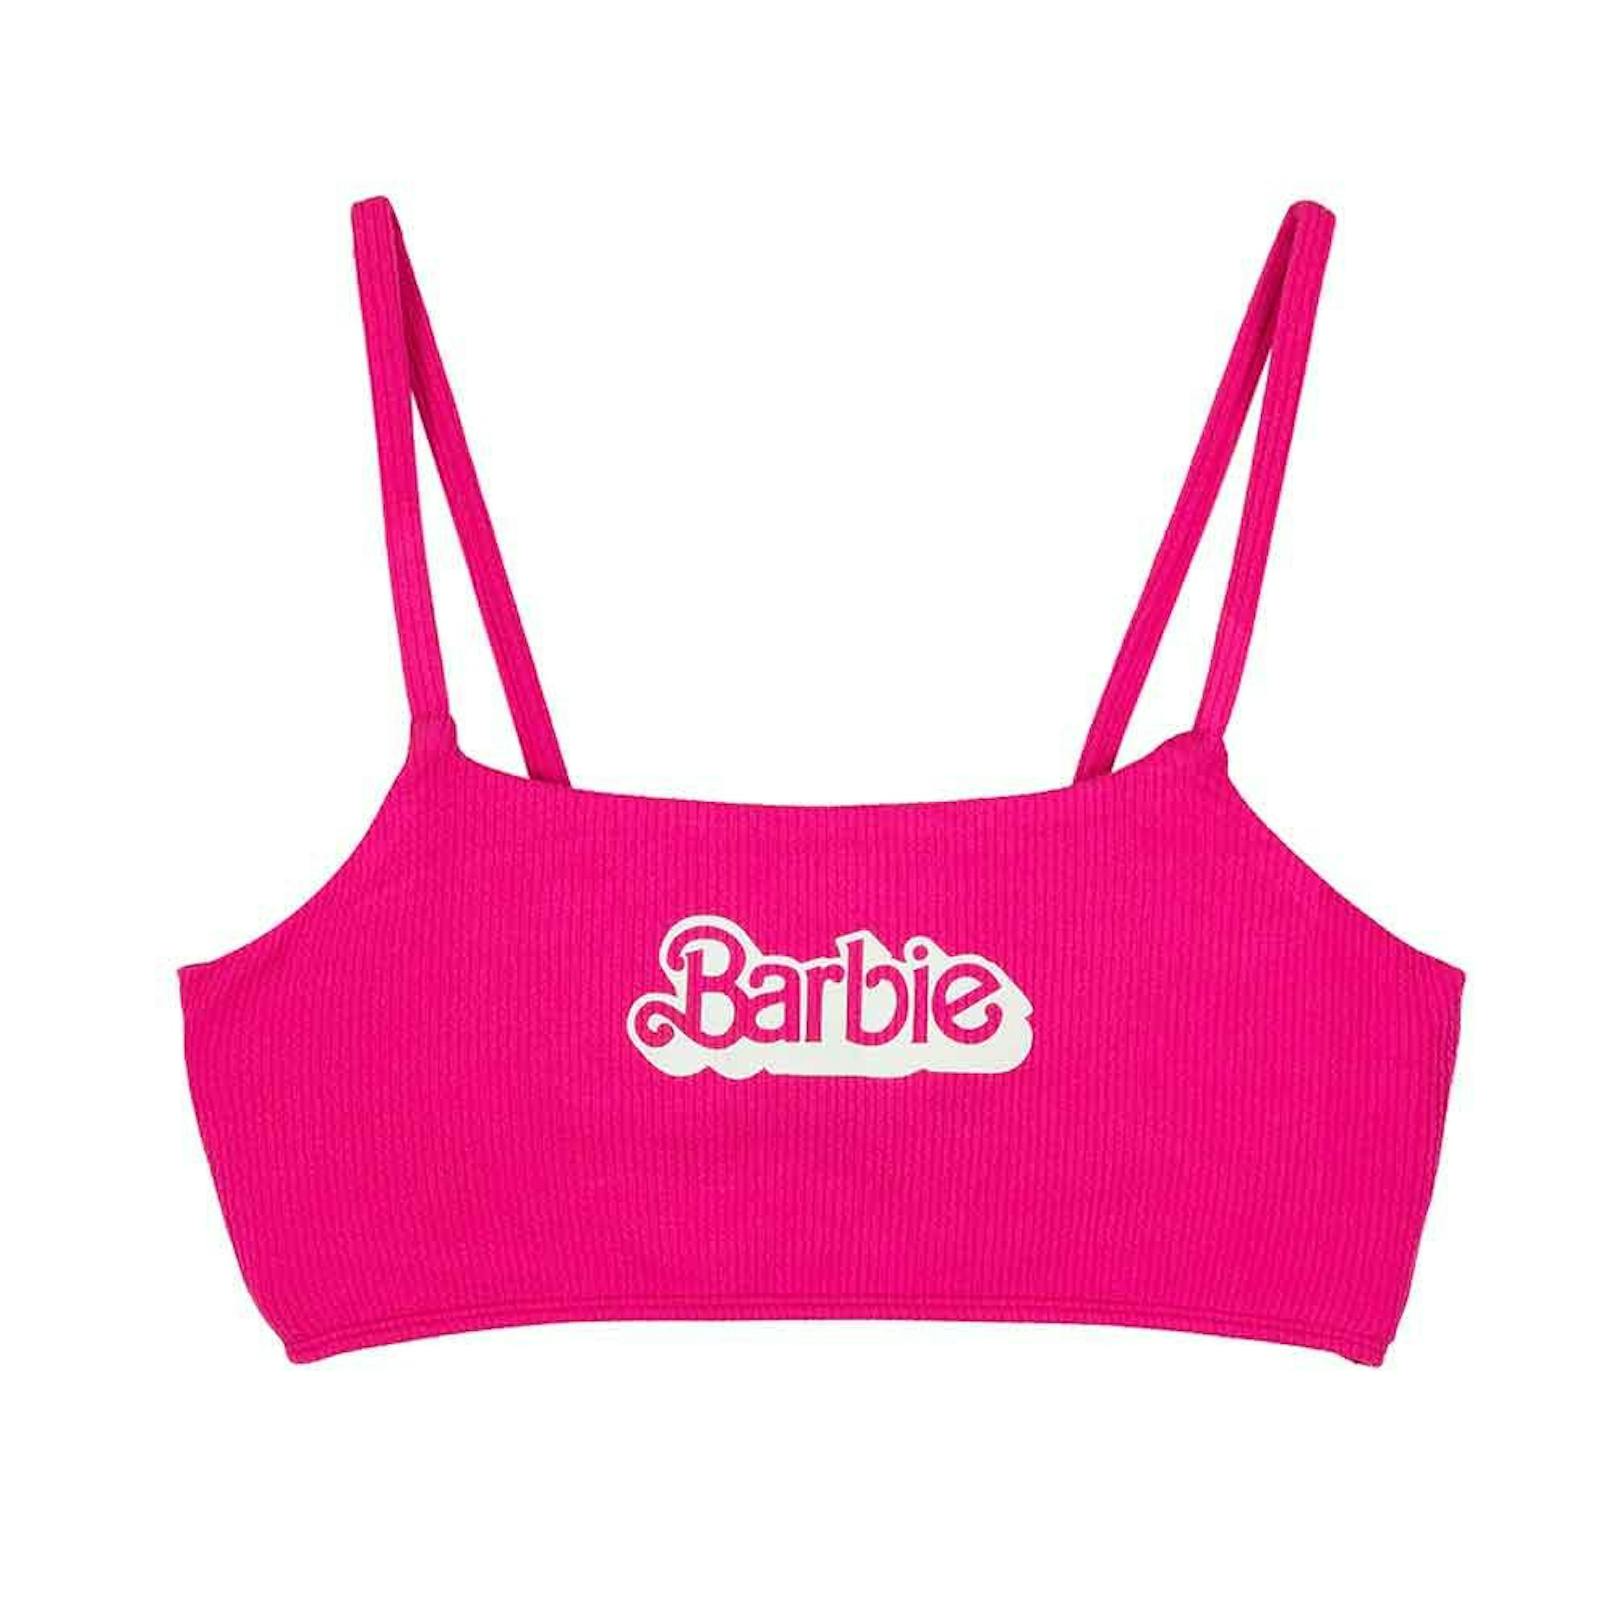 Dieser Sommer wird rosa! Primark launcht den Merchandise "Barbie - The Movie", der mit Margot Robbie und Ryan Gosling am 21. Juli in Österreich startet.